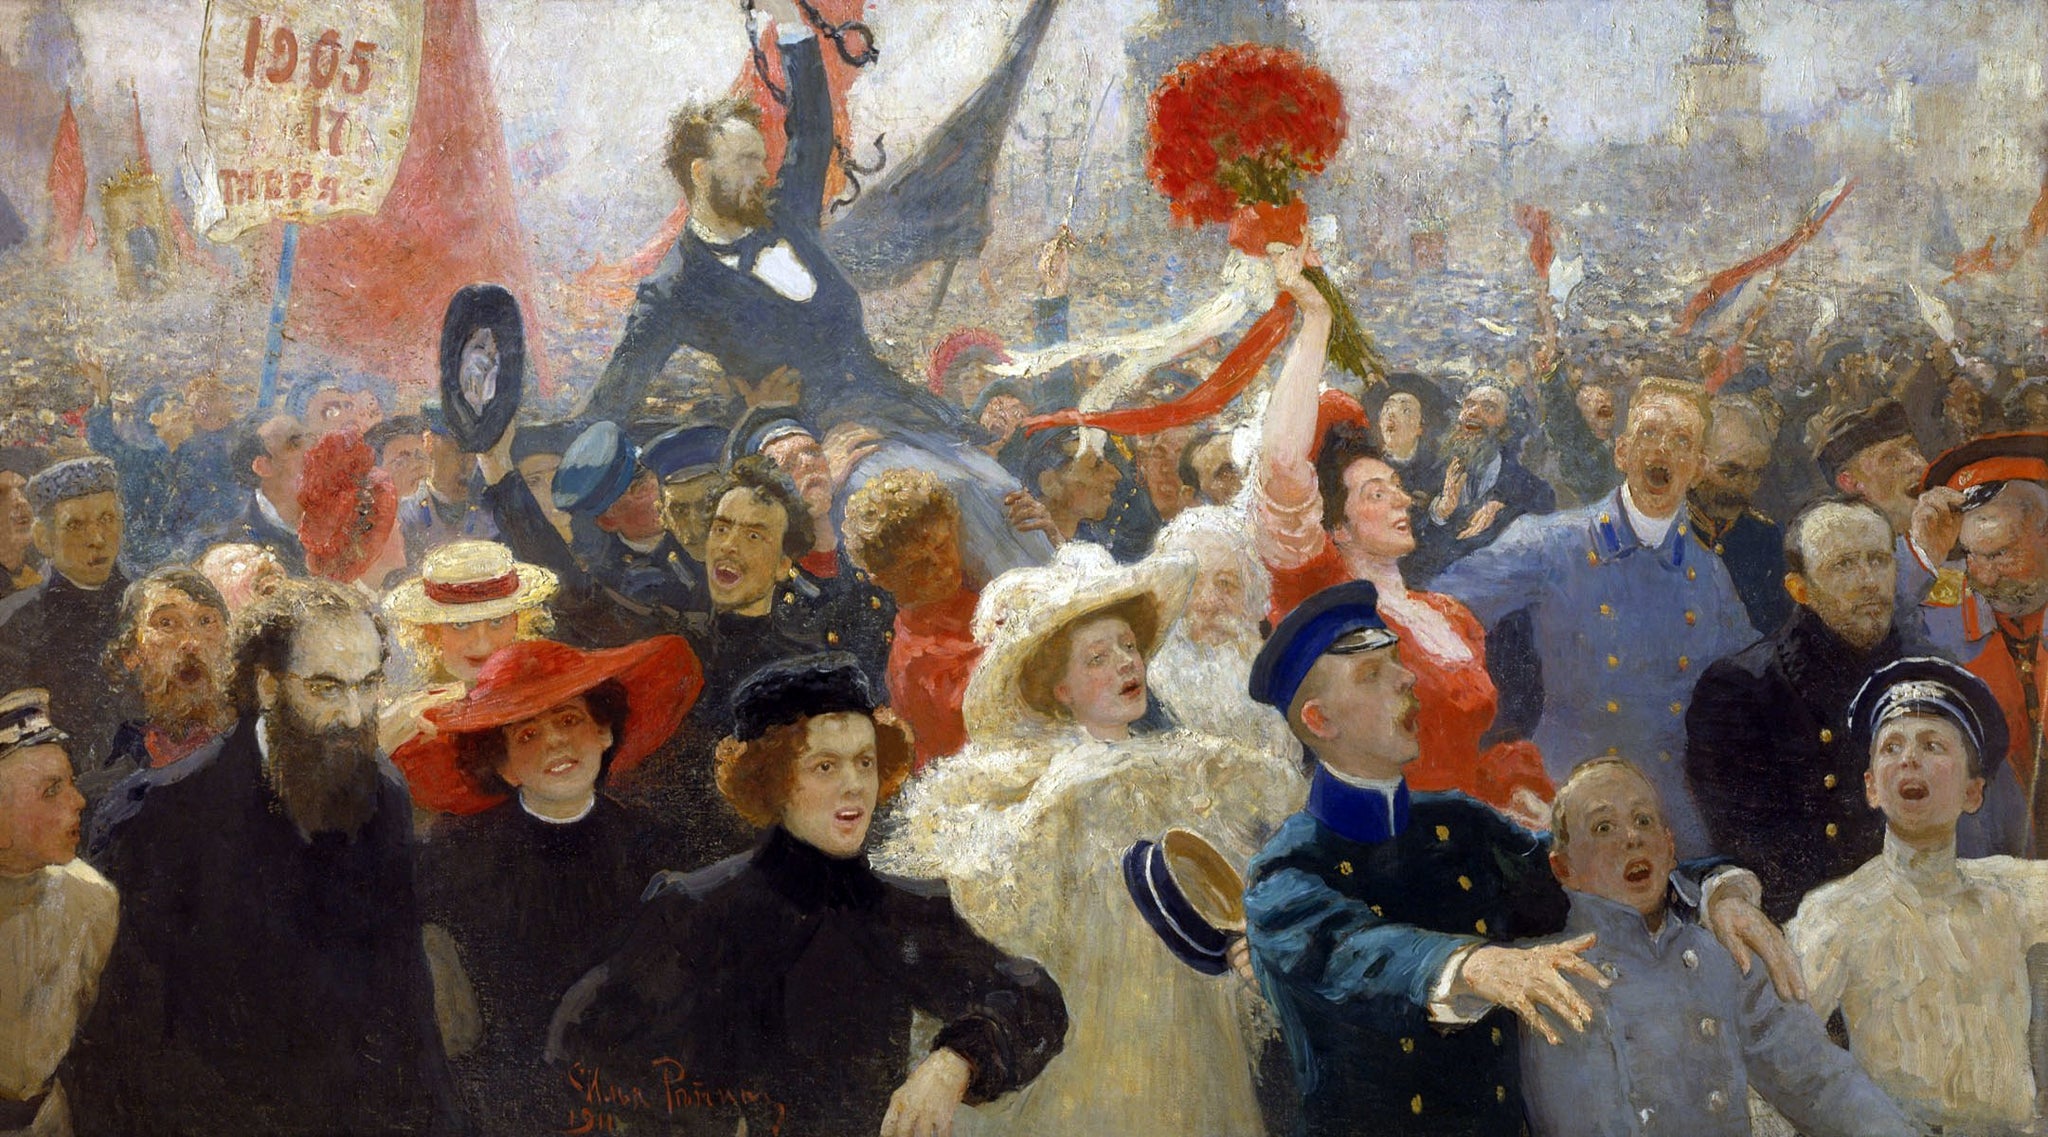 Manifestation du 17 octobre 1905 - Ilya Repin